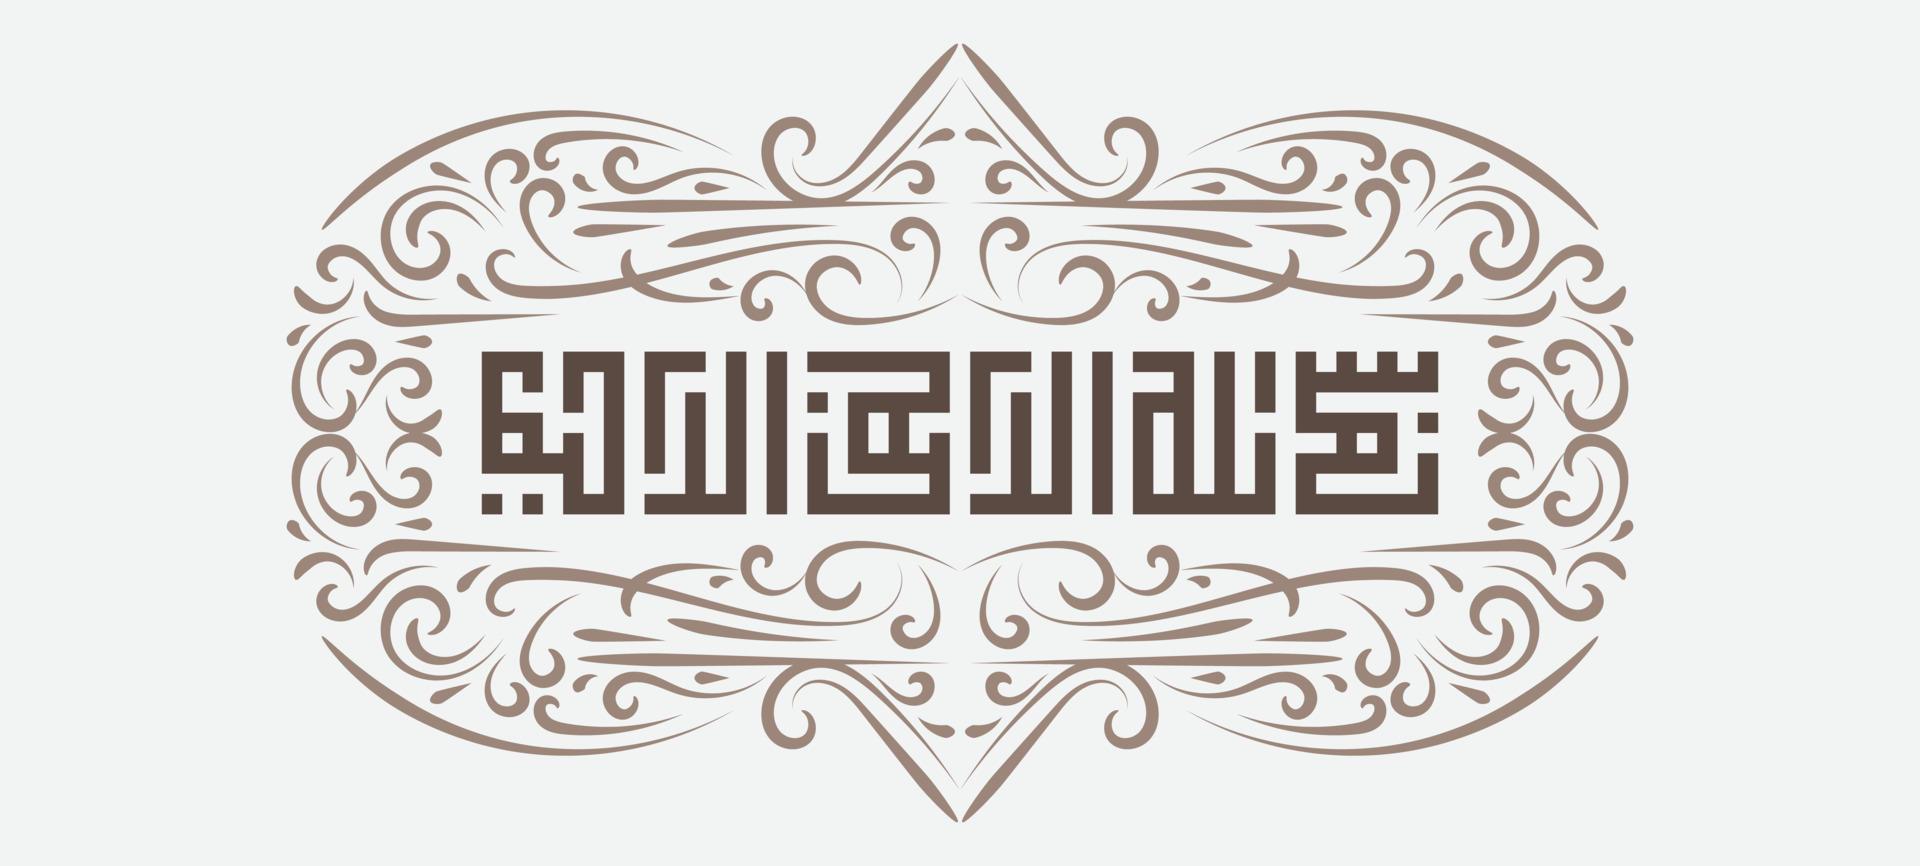 bismillah escrito en caligrafía islámica o árabe con marco antiguo. significado de bismillah, en el nombre de allah, el compasivo, el misericordioso vector